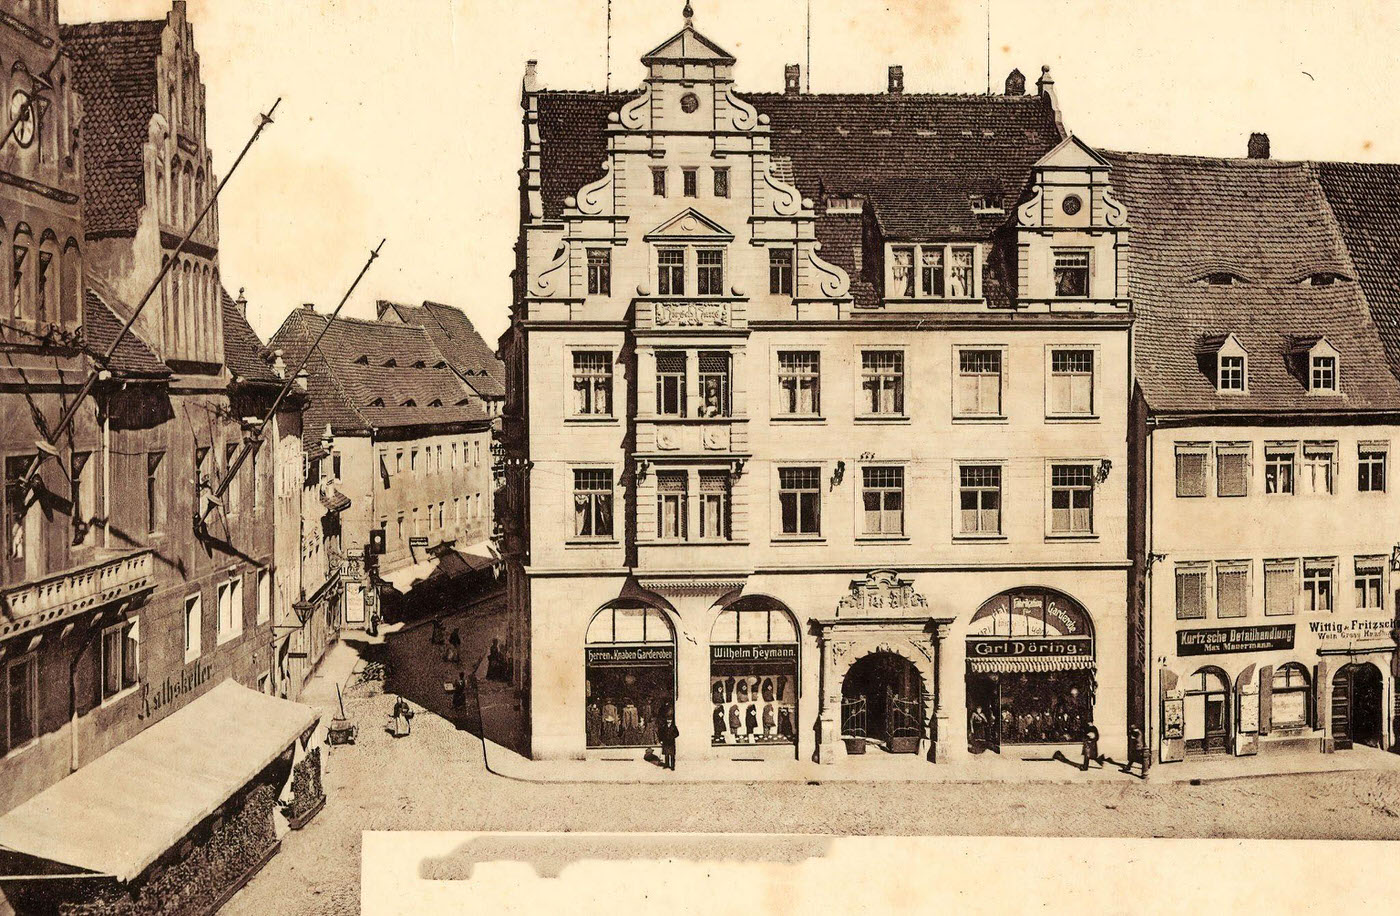 Town halls in Landkreis Meissen, Meissen, Markt, Hirschhaus, Germany, 1902.